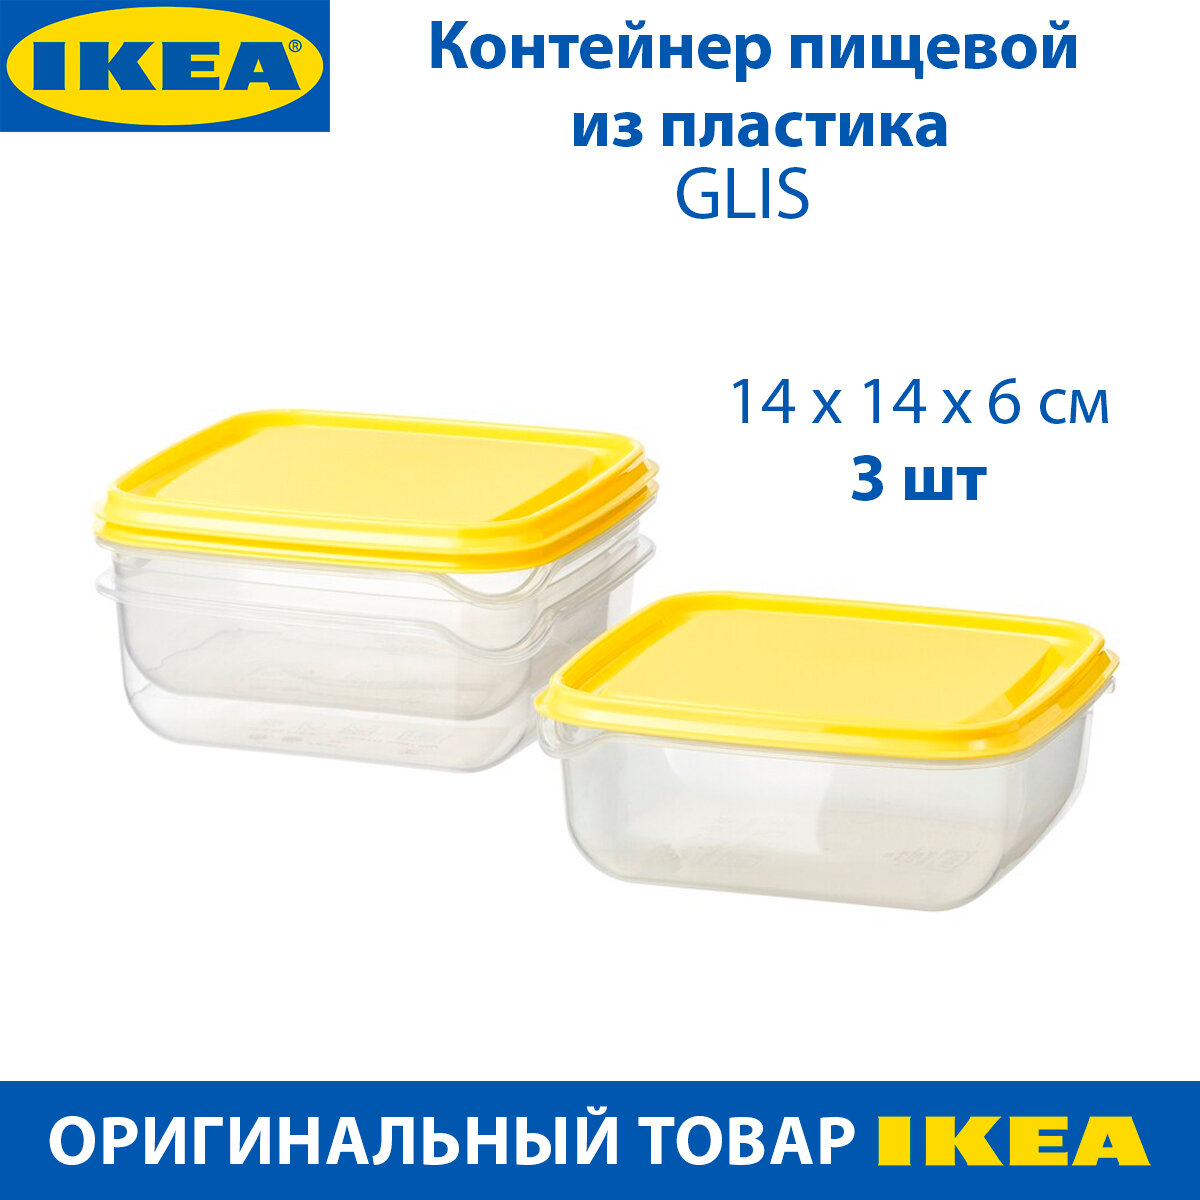 Контейнер пищевой IKEA - PRUTA (прута), пластиковый, 600 мл, желтый, 3 шт